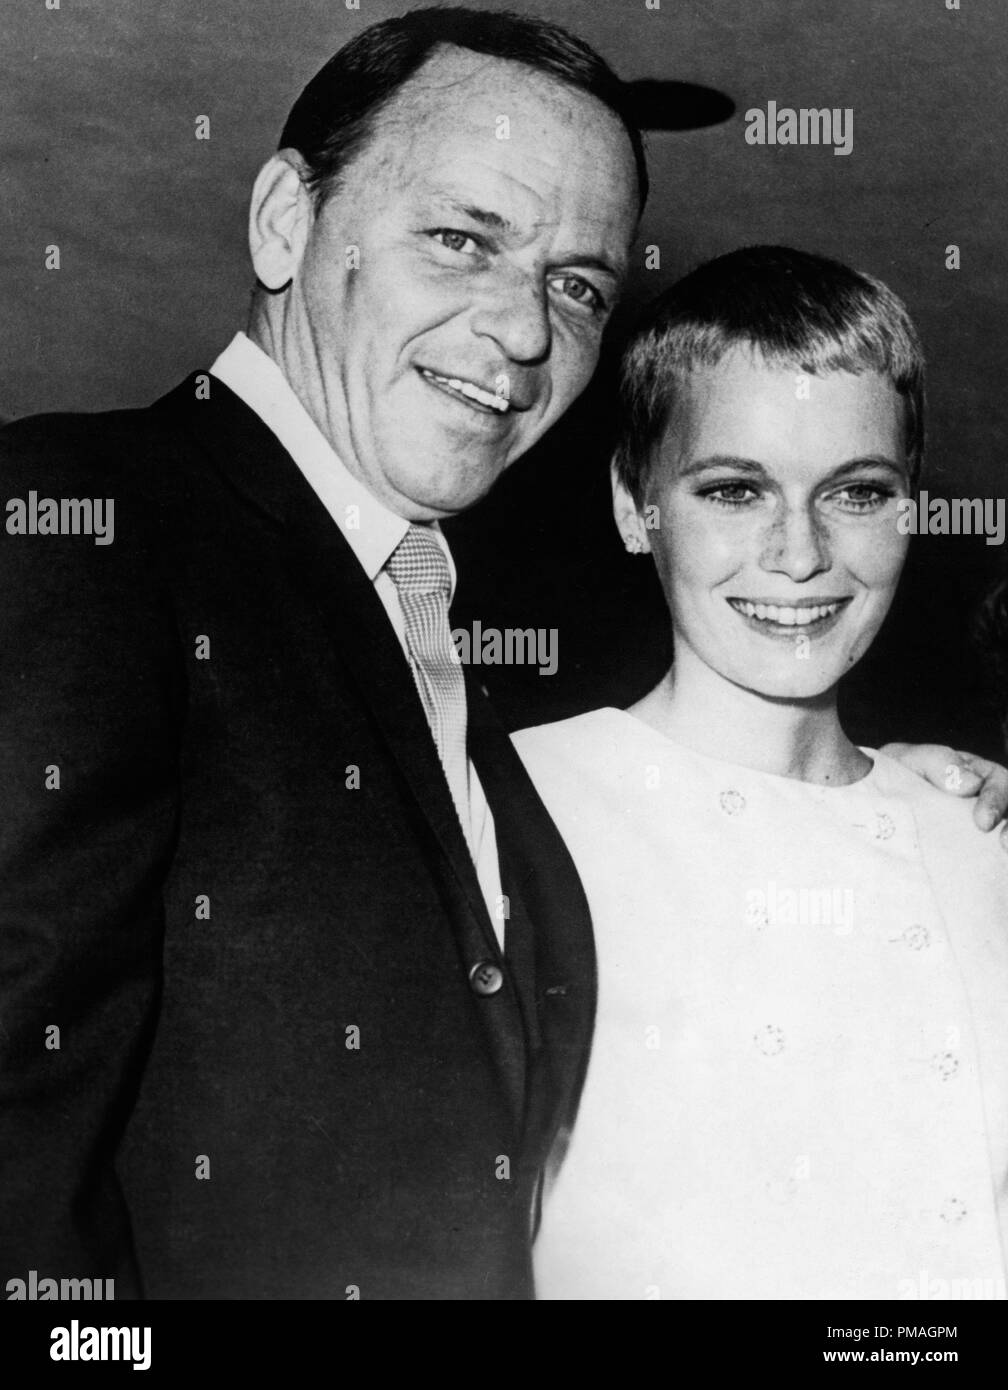 Frank Sinatra y Mia Farrow en el día de su boda en Las Vegas, NV 1966 Archivo de referencia # 32733 236tha Foto de stock